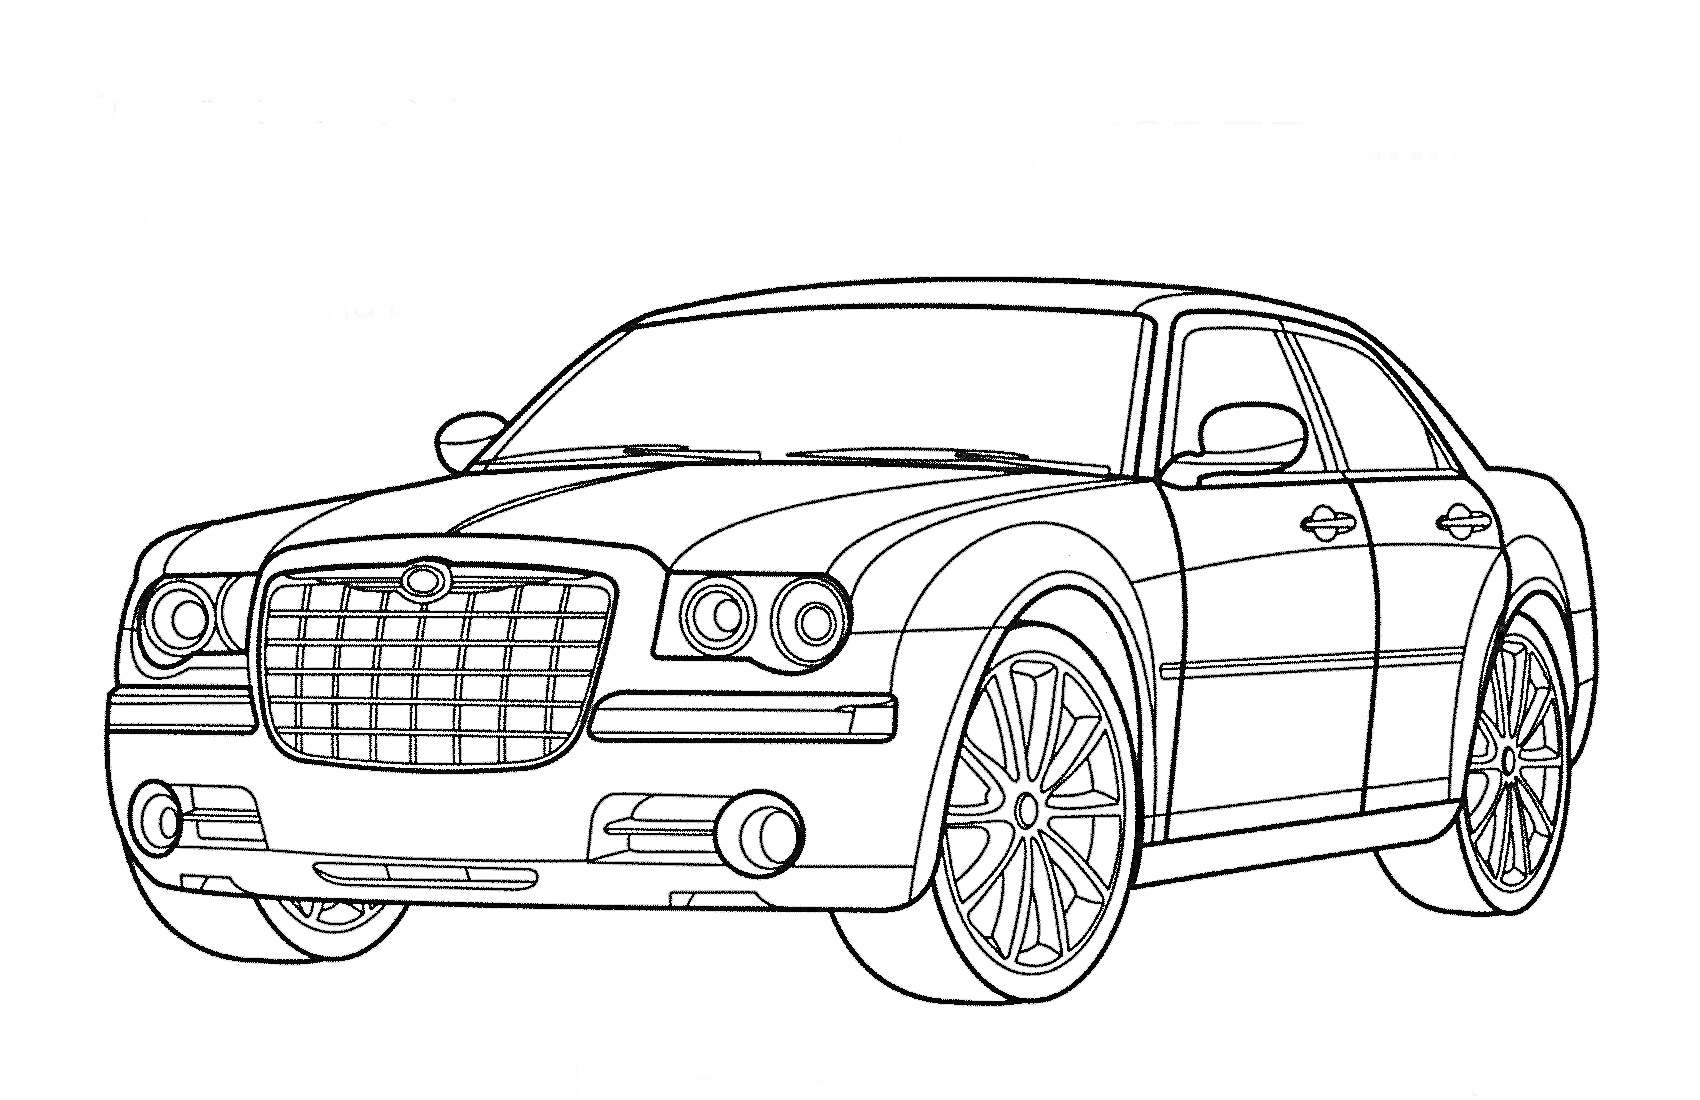 Раскраска Легковой автомобиль Bentley с характерной передней решеткой и большими колесами